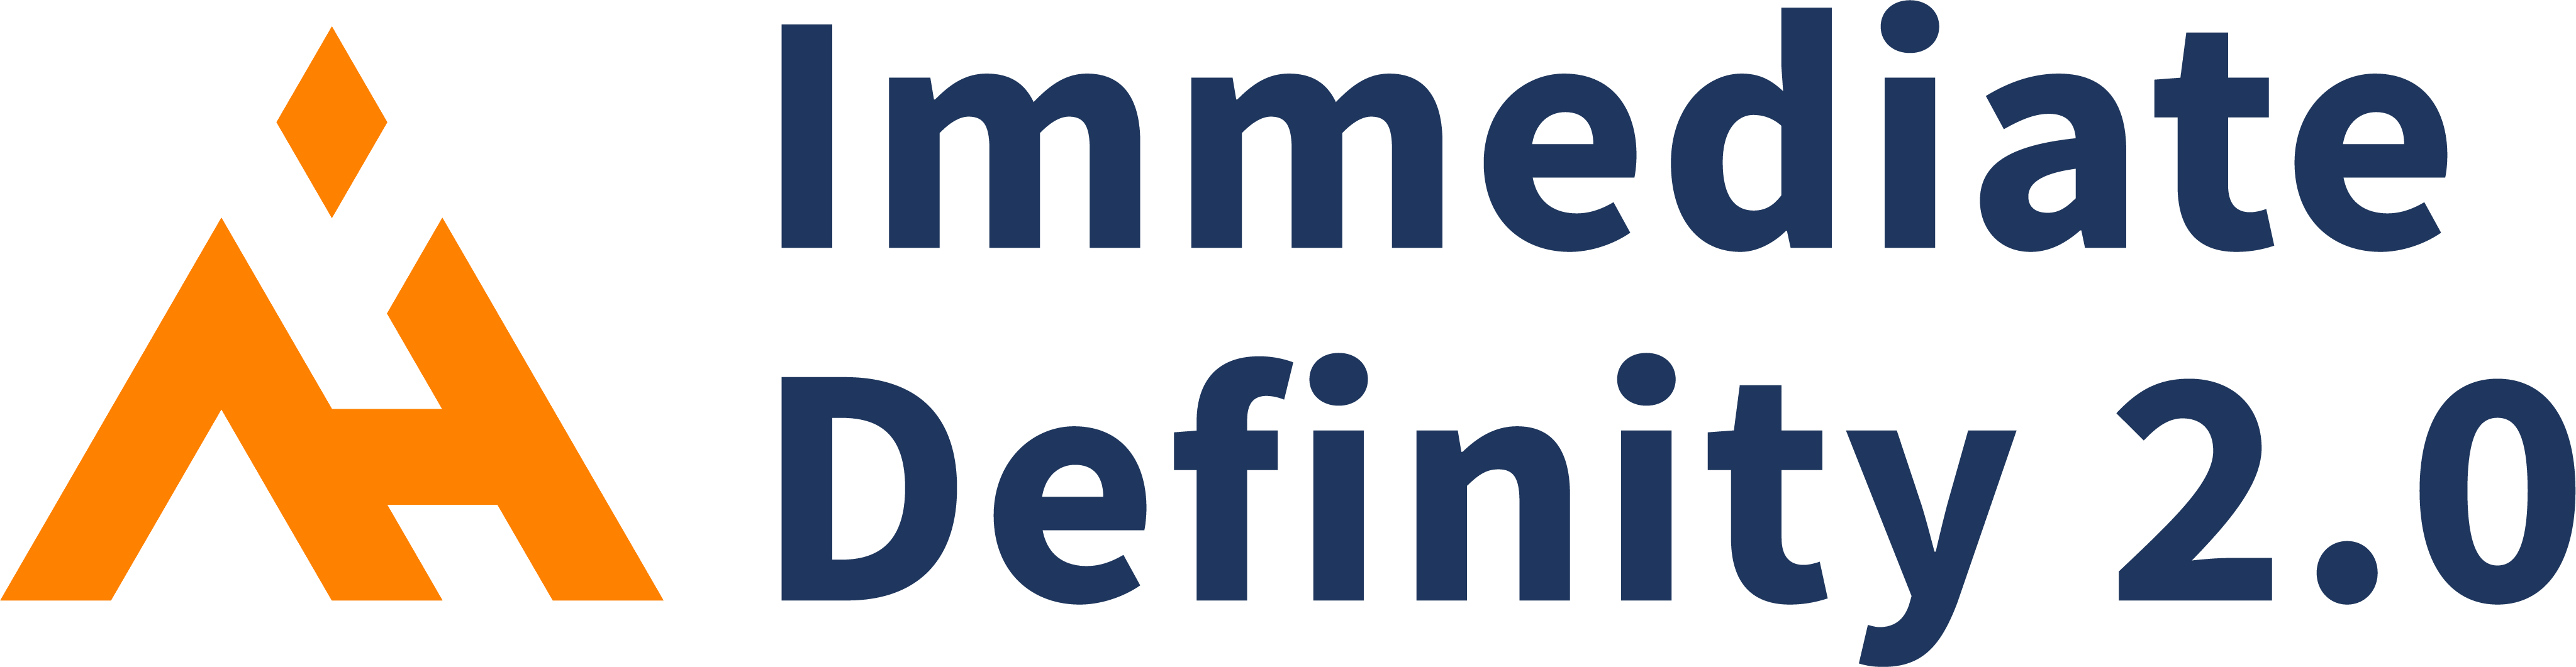 Logo Definizione immediata 2.0